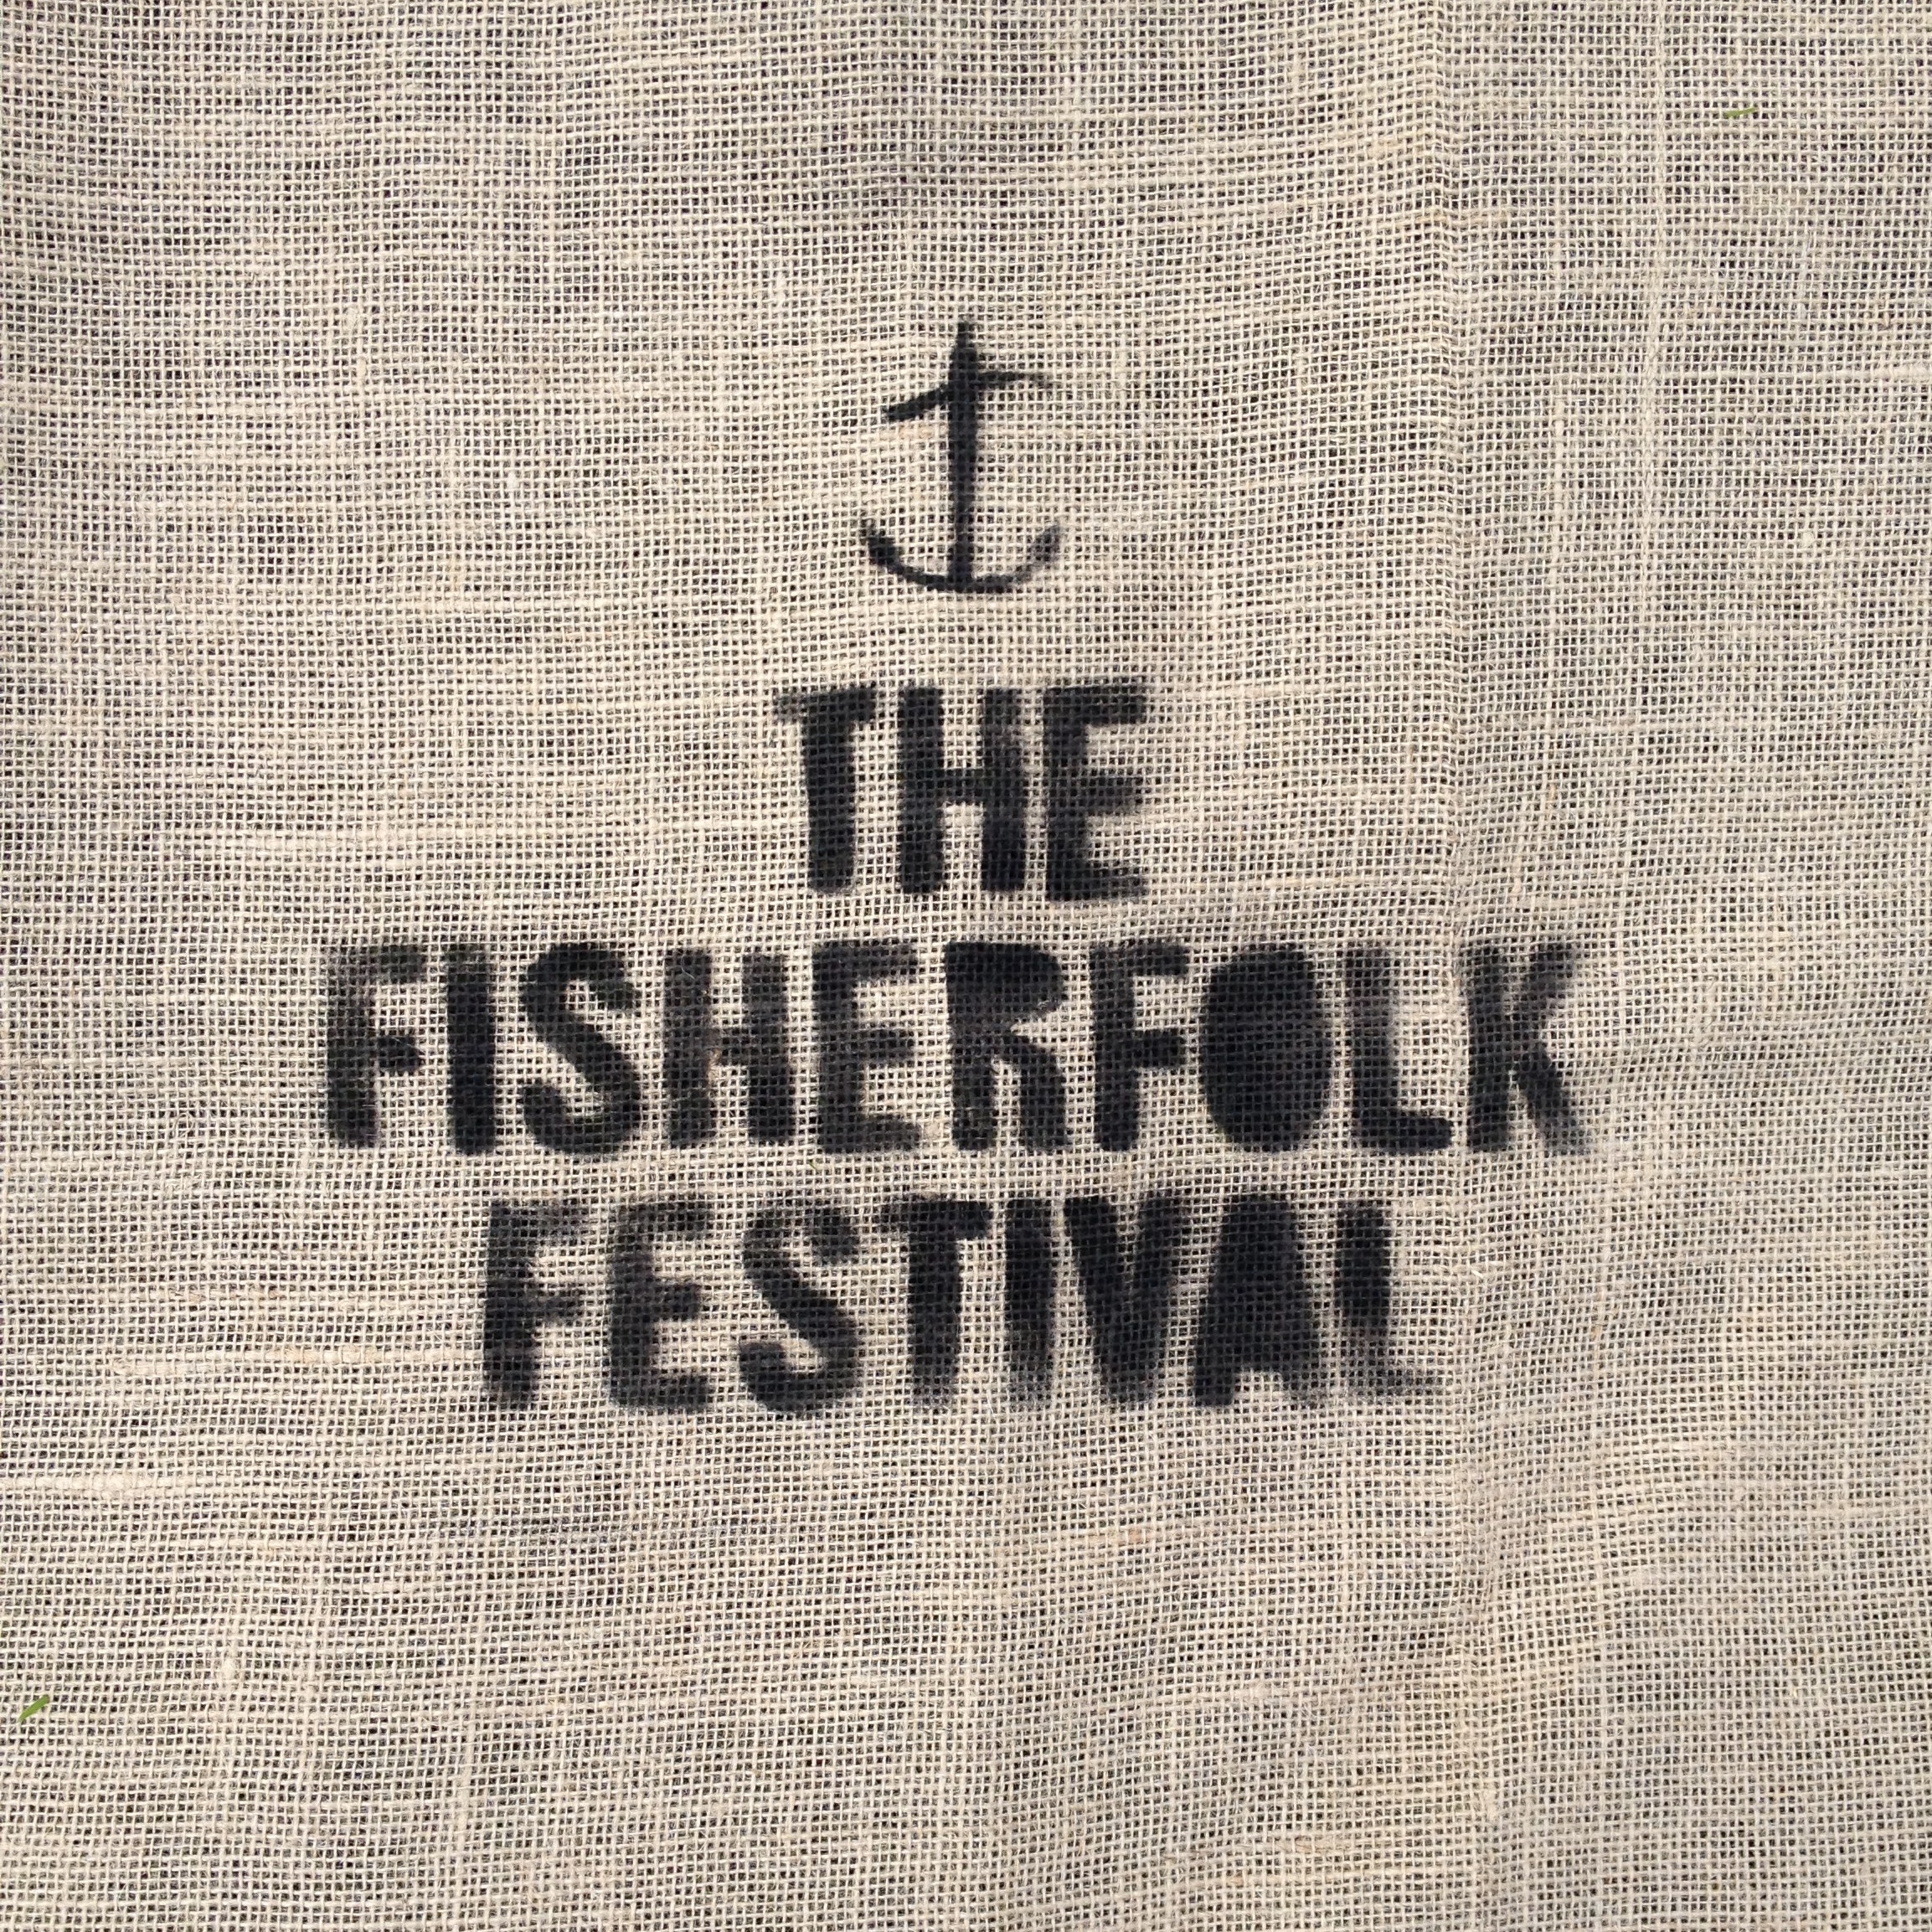 FISHERFOLK FESTIVAL 2021